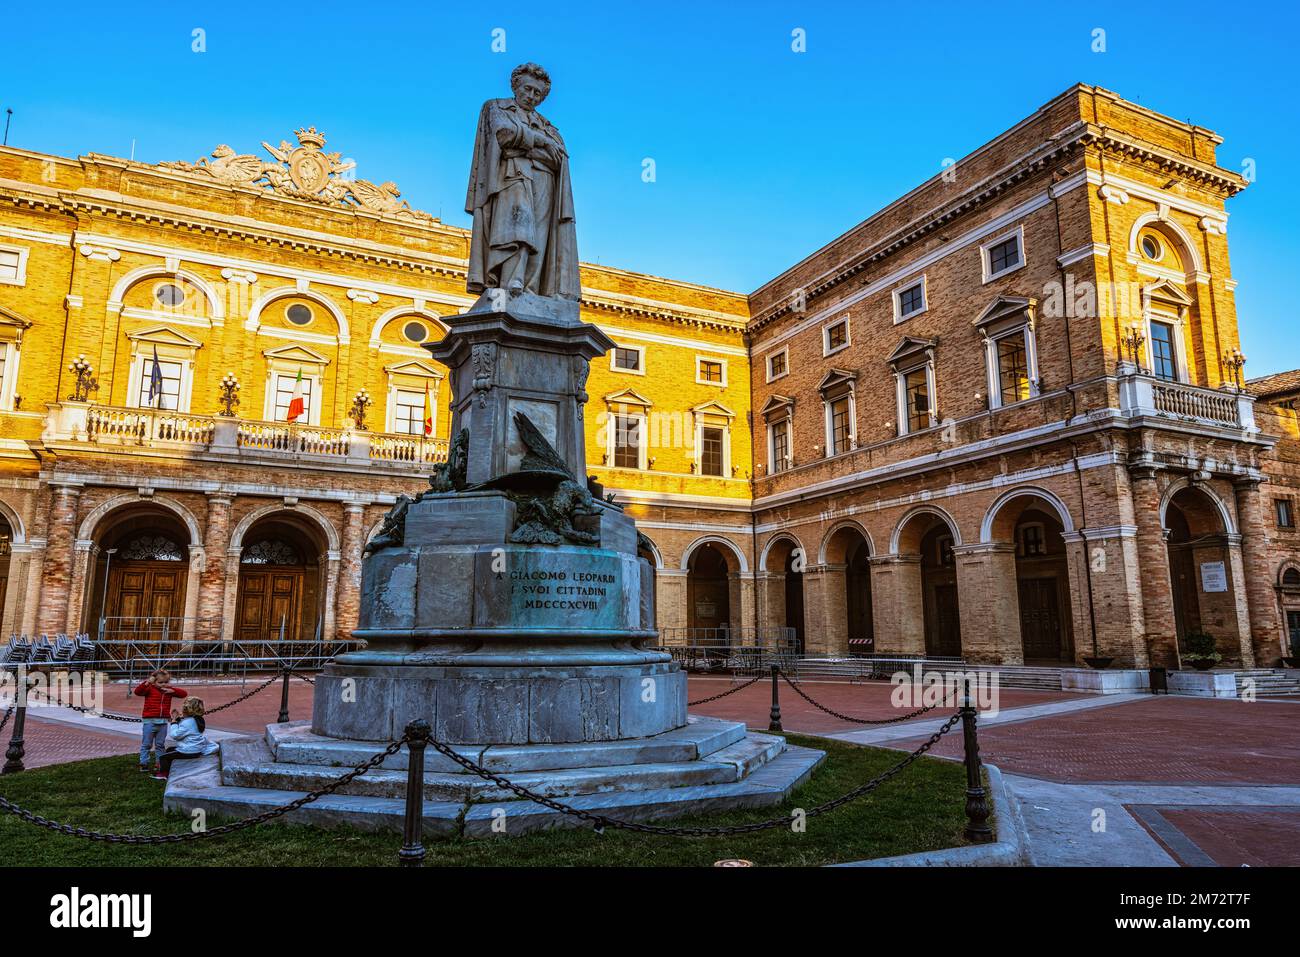 Place Giacomo Leopardi, l'Hôtel de ville et le monument dédié au poète. Recanati, province de Macerata, Marche, Italie, Europe Banque D'Images